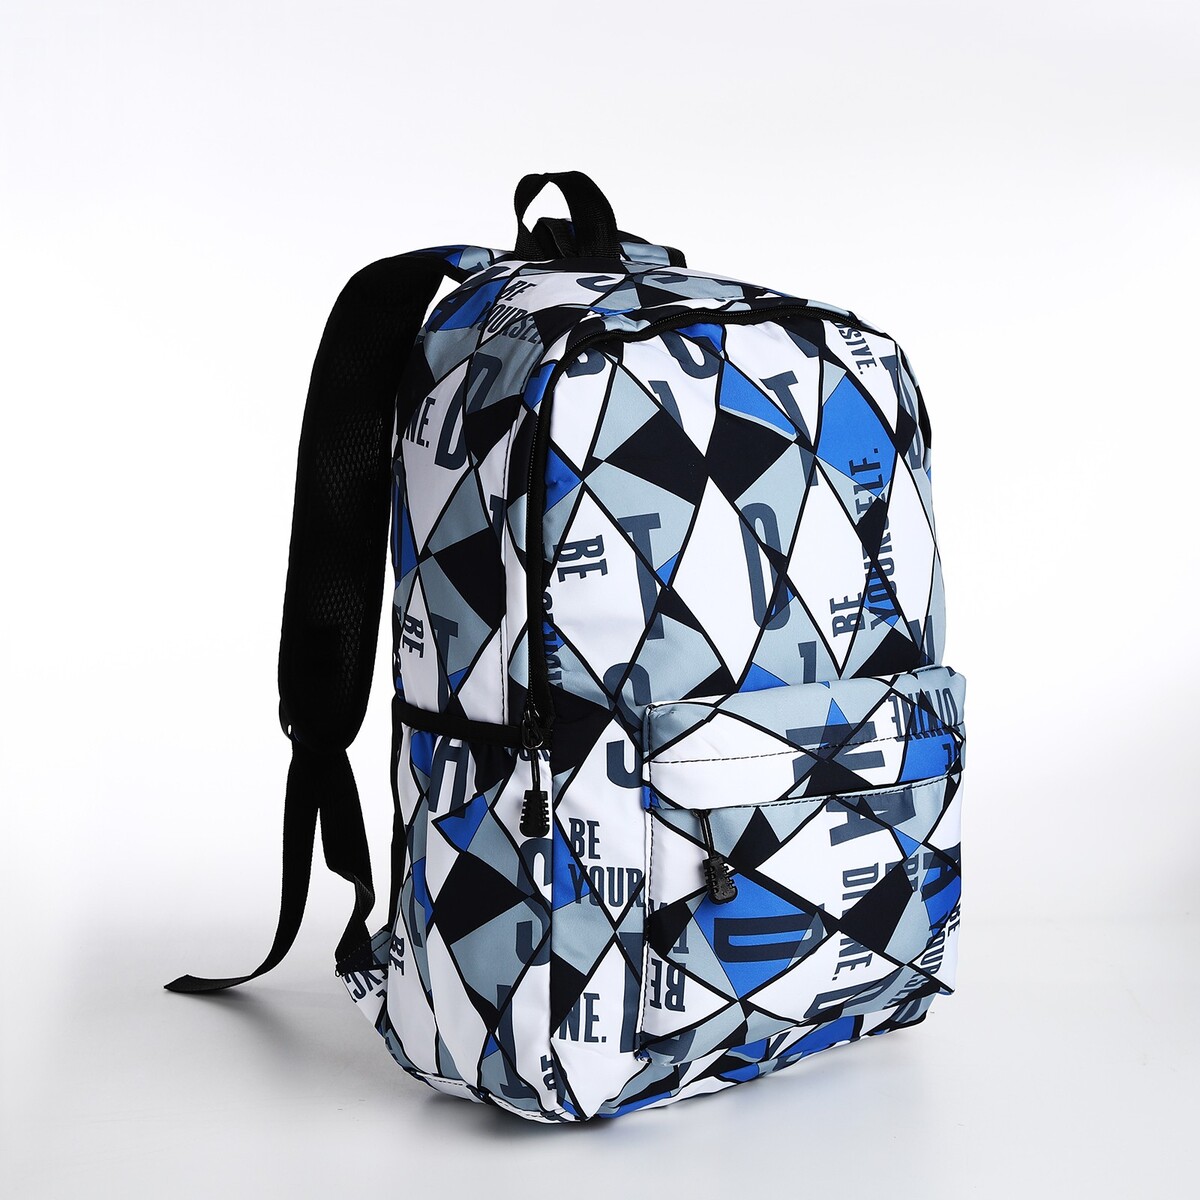 Рюкзак на молнии, 3 наружных кармана, цвет черный/синий/серый рюкзак на молнии 3 наружных кармана серый голубой